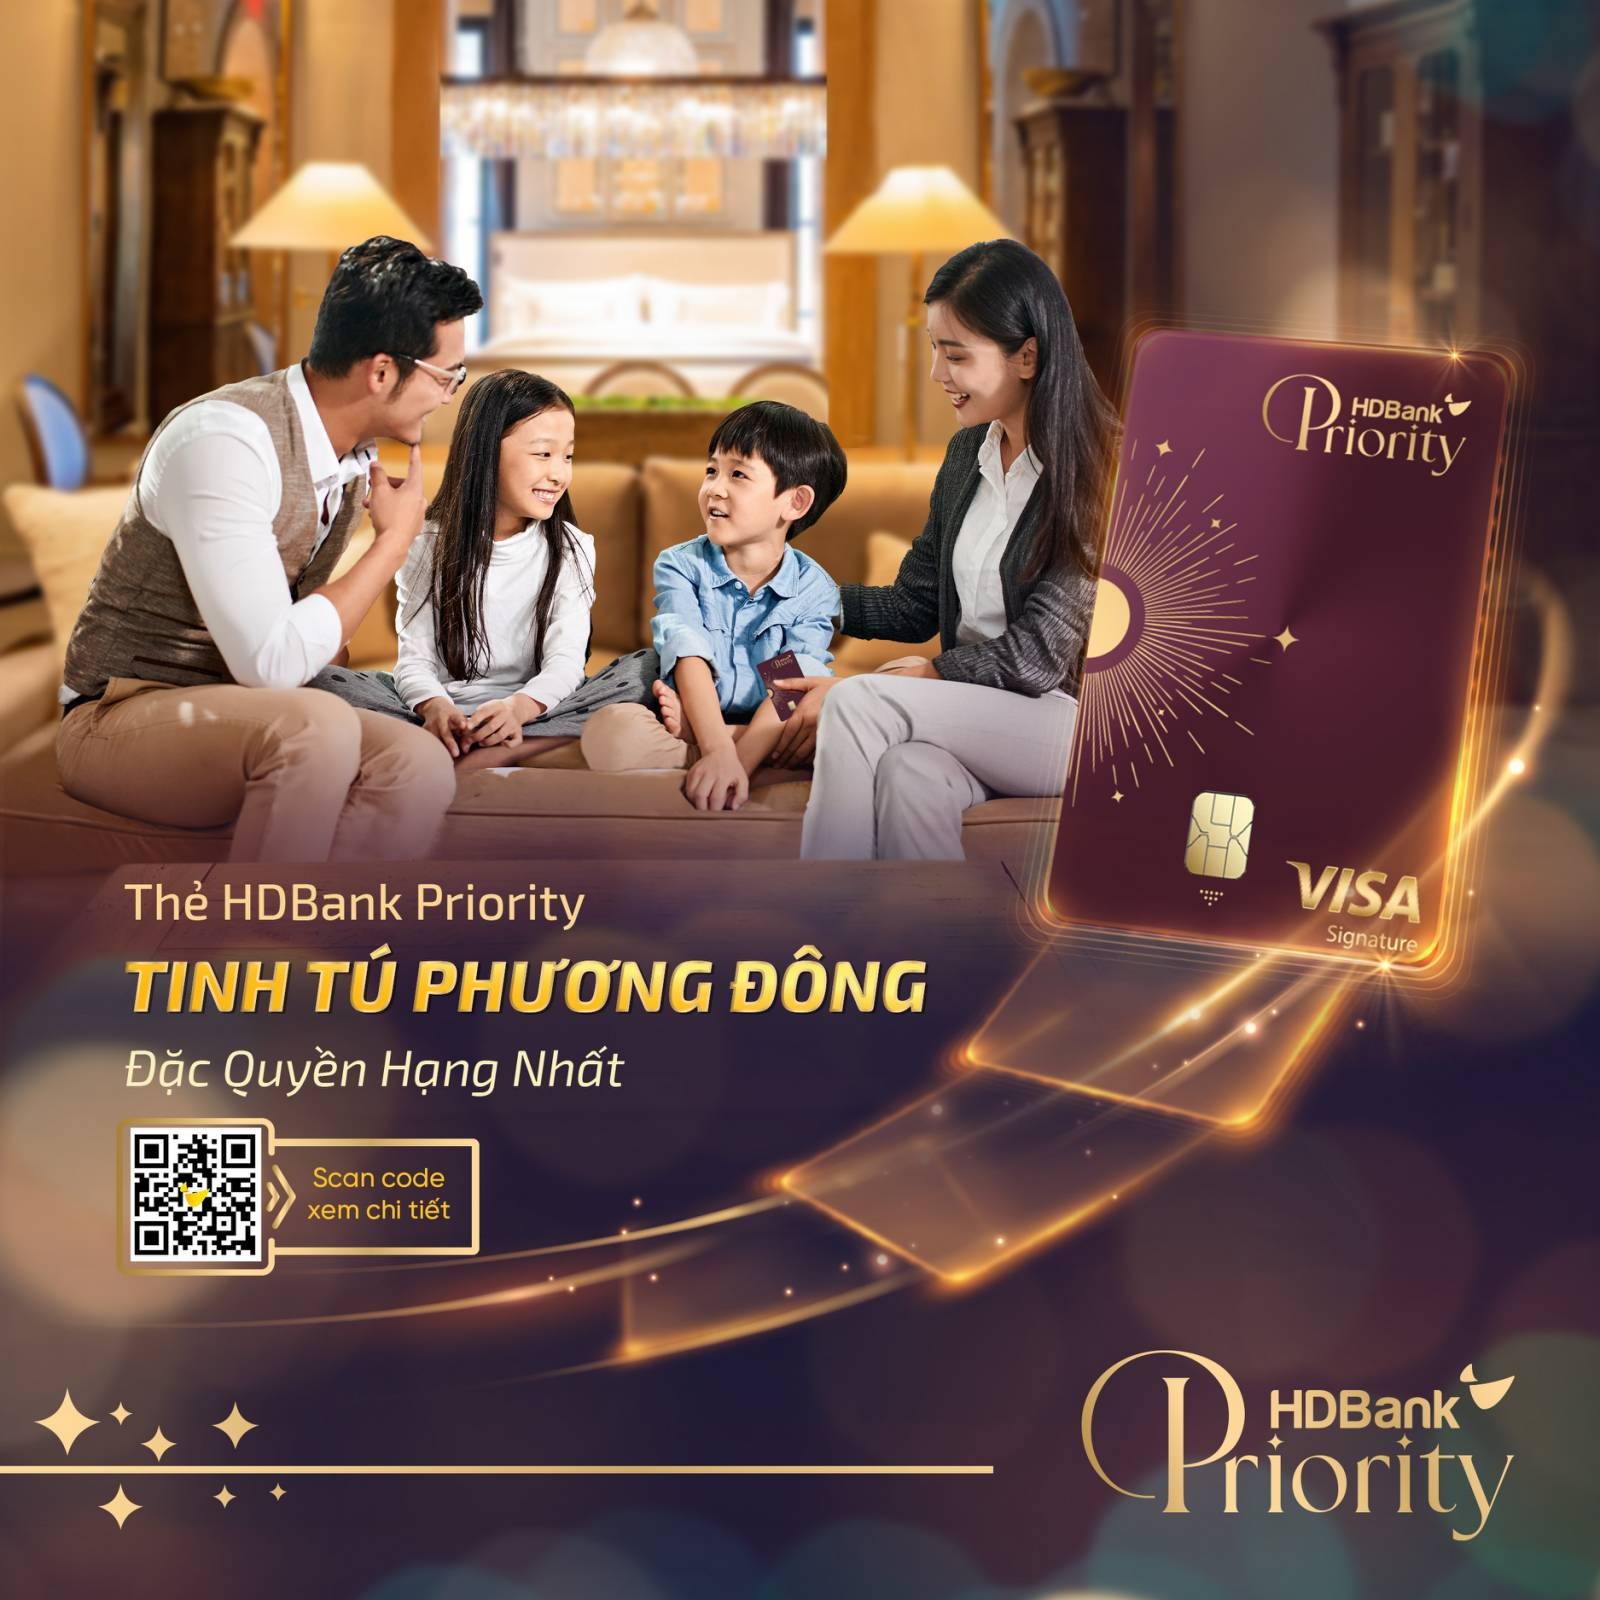 hinh-7-the-tin-dung-hdbank-priority-tinh-tu-phuong-dong-1688436167.jpg